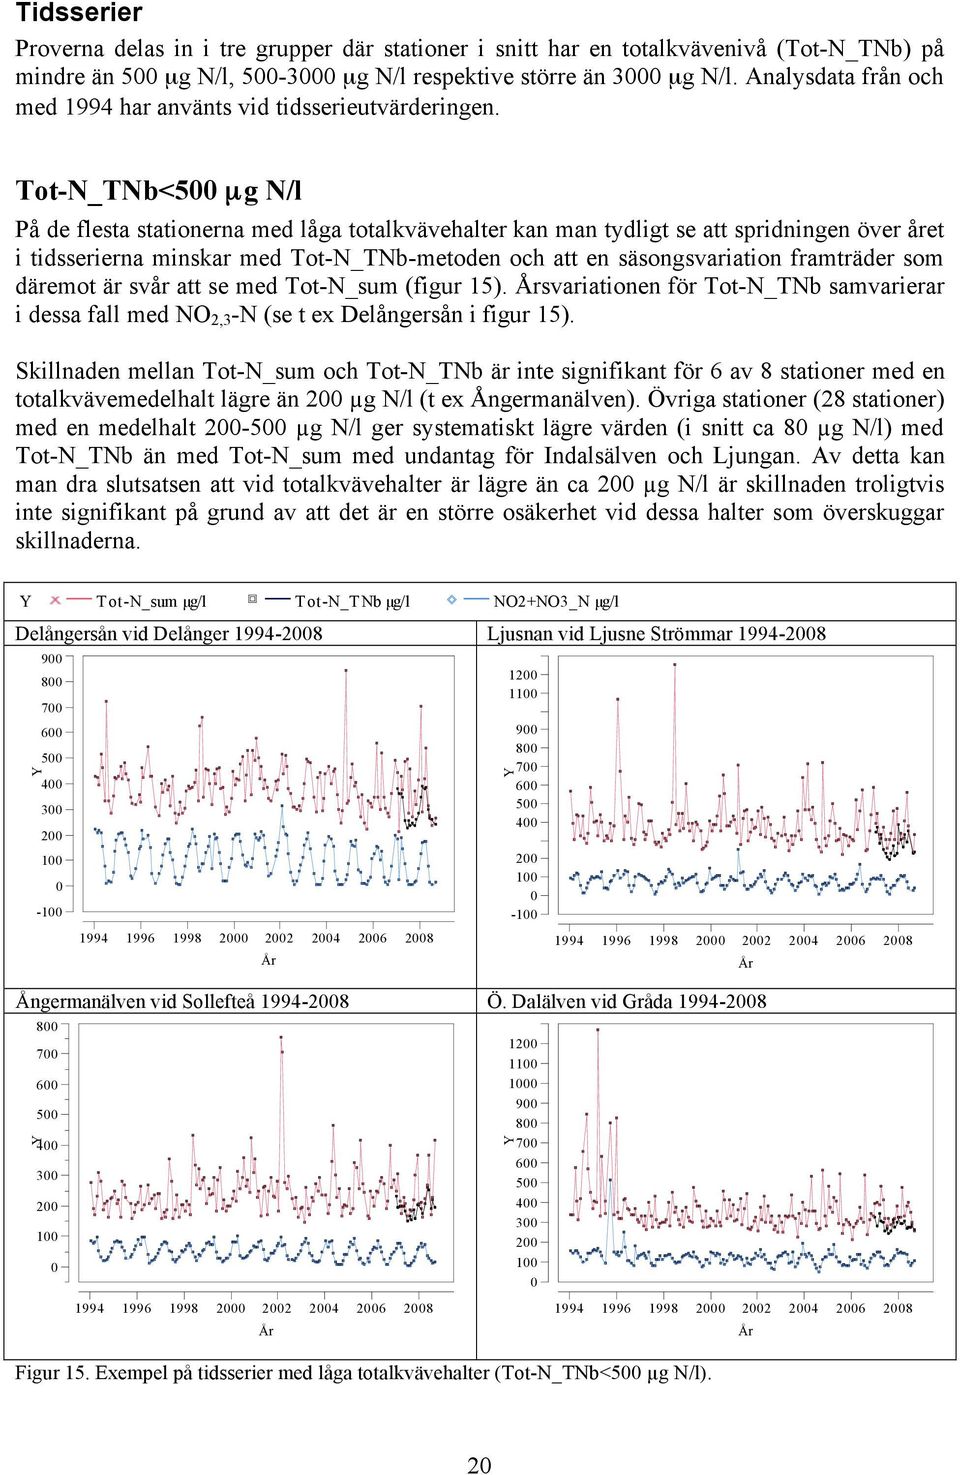 Tot-N_TNb<5 µg N/l På de flesta stationerna med låga totalkvävehalter kan man tydligt se att spridningen över året i tidsserierna minskar med Tot-N_TNb-metoden och att en säsongsvariation framträder